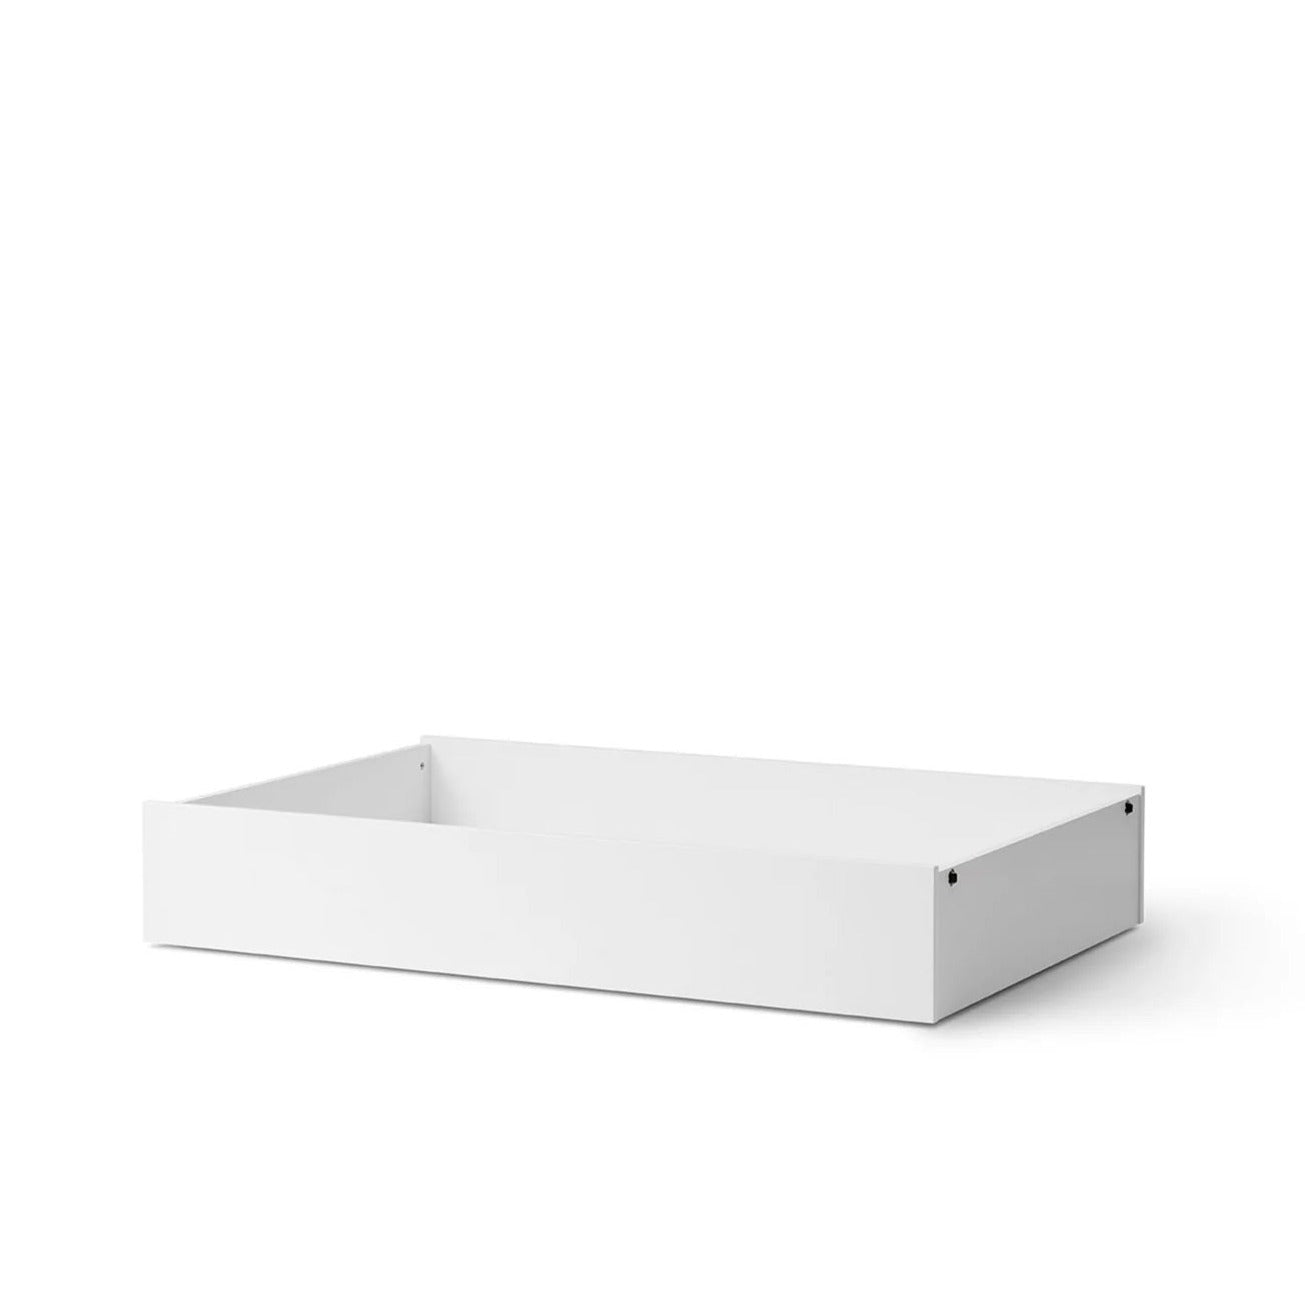 Oliver Furniture Wood Lounger Bed 90 - White/Oak